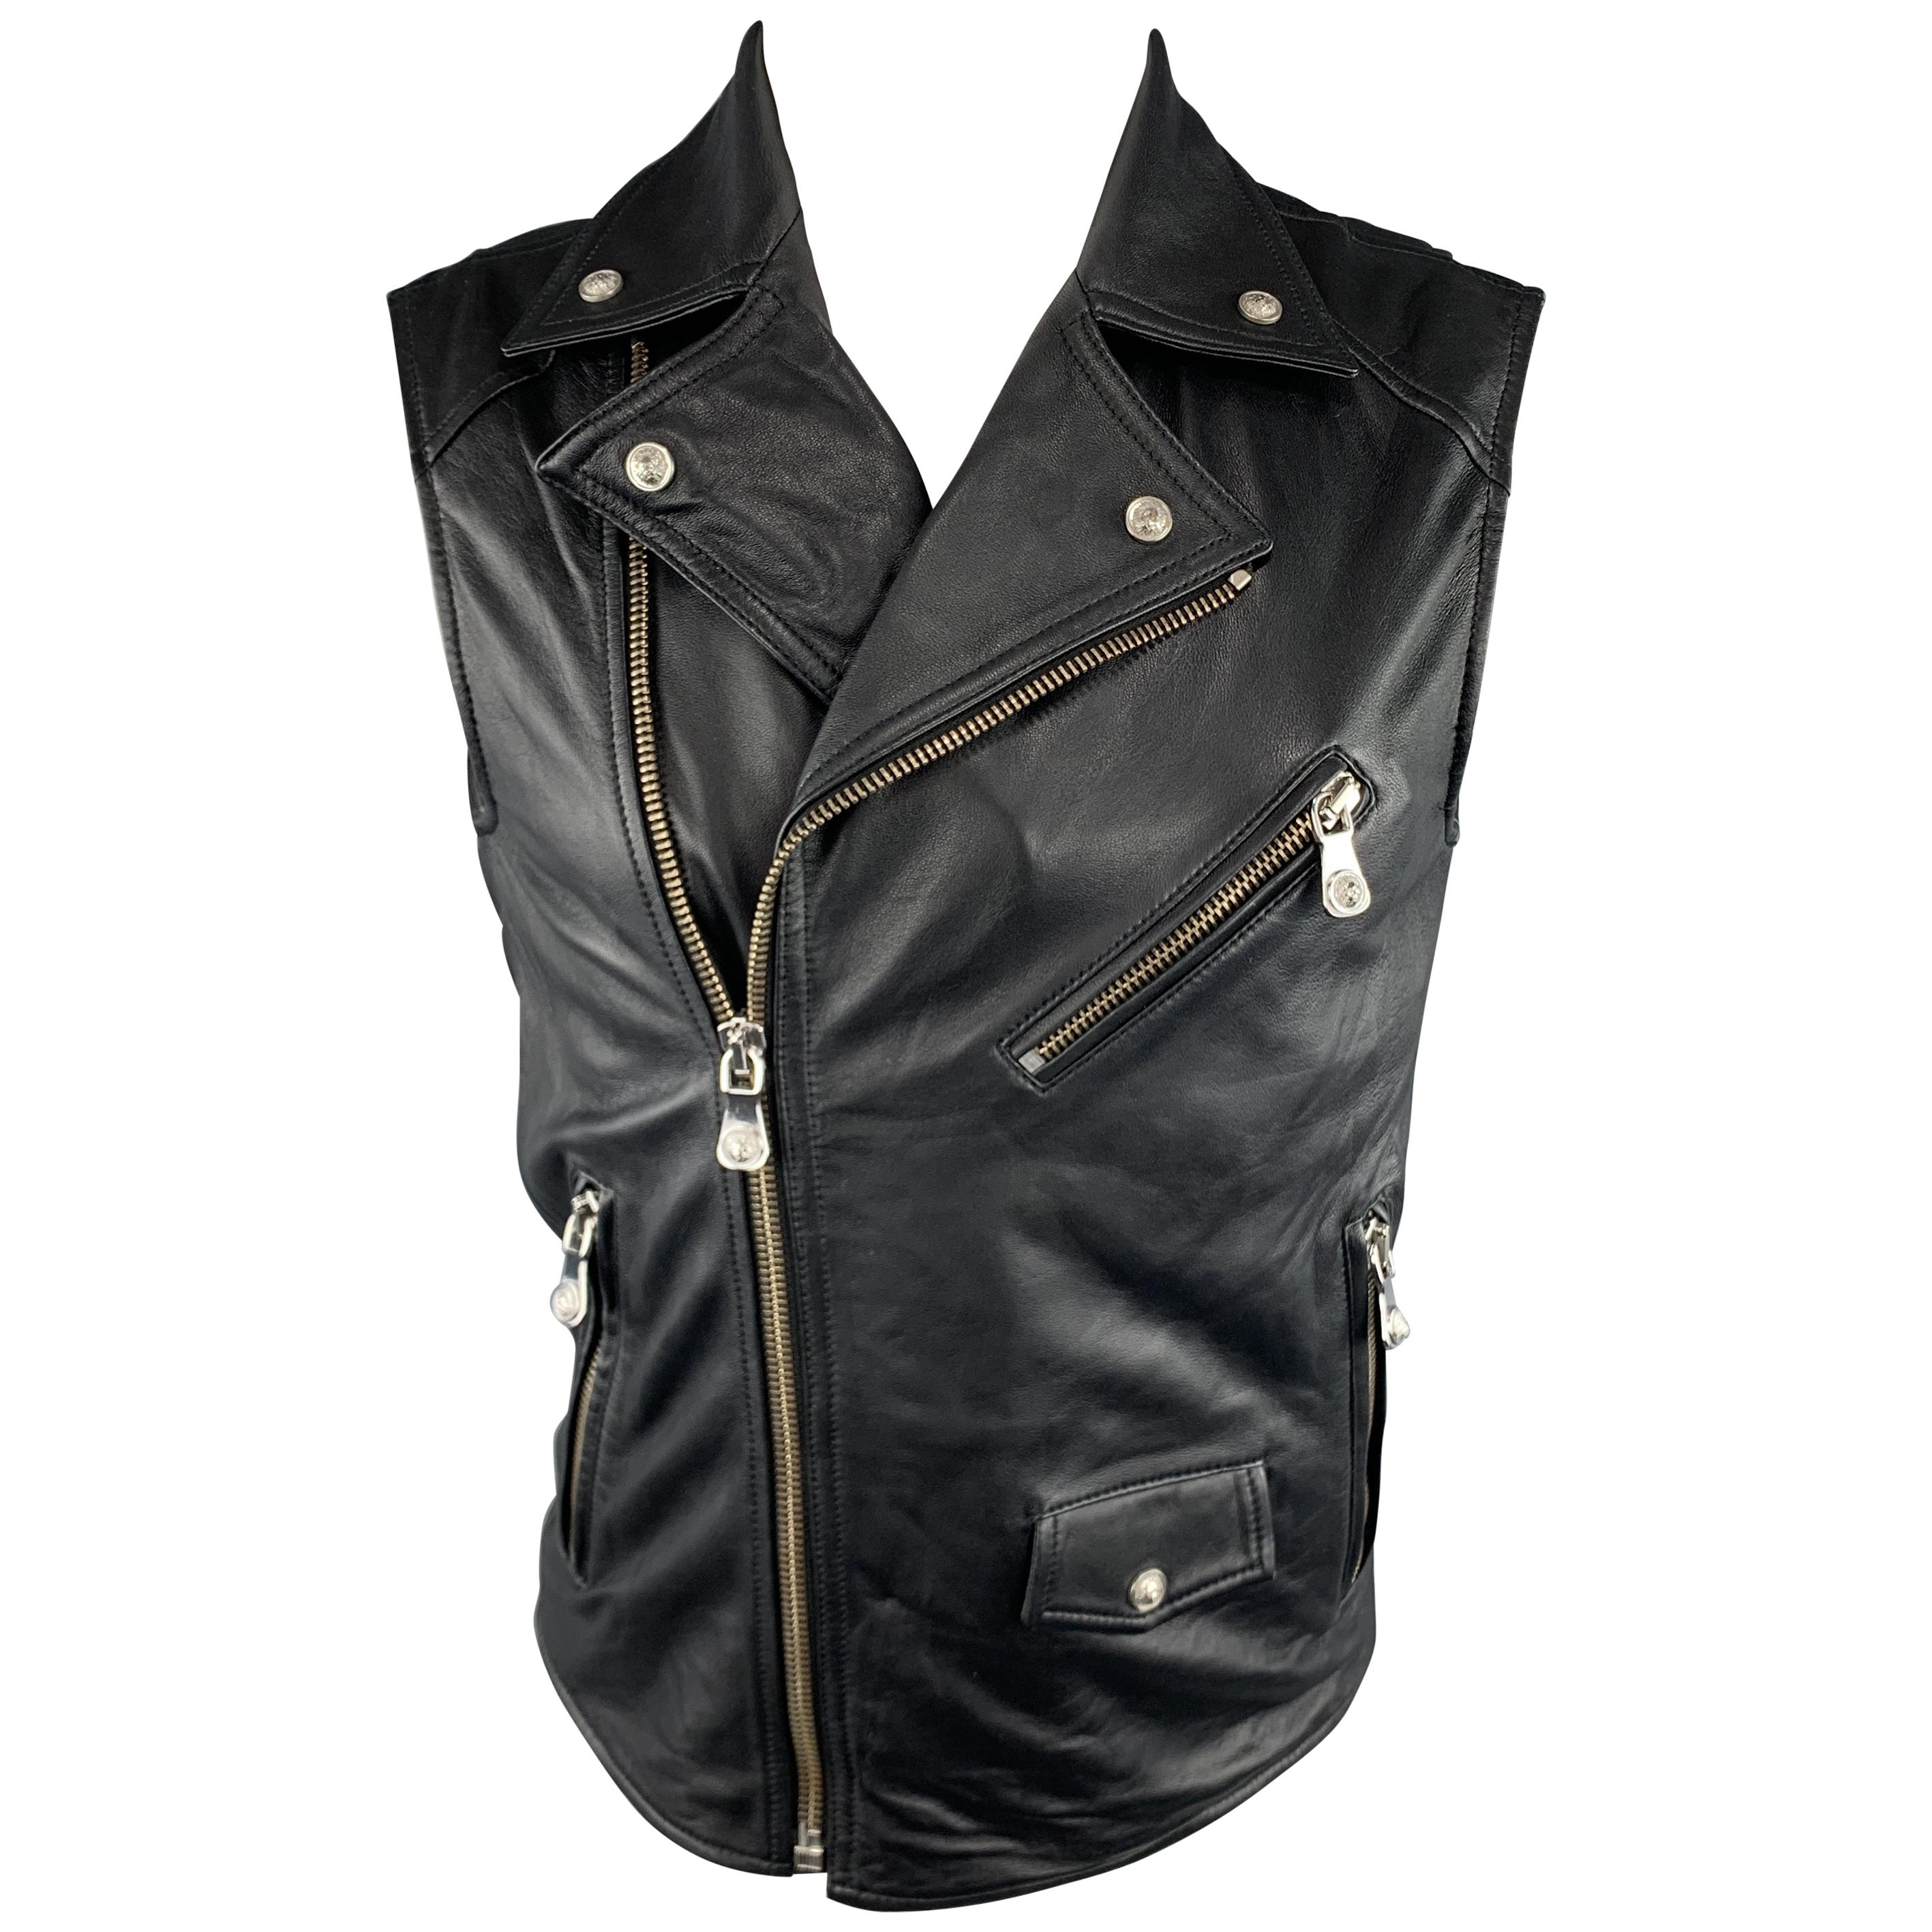 VERSUS by GIANNI VERSACE Size 36 Black Leather Lion Head Biker Vest